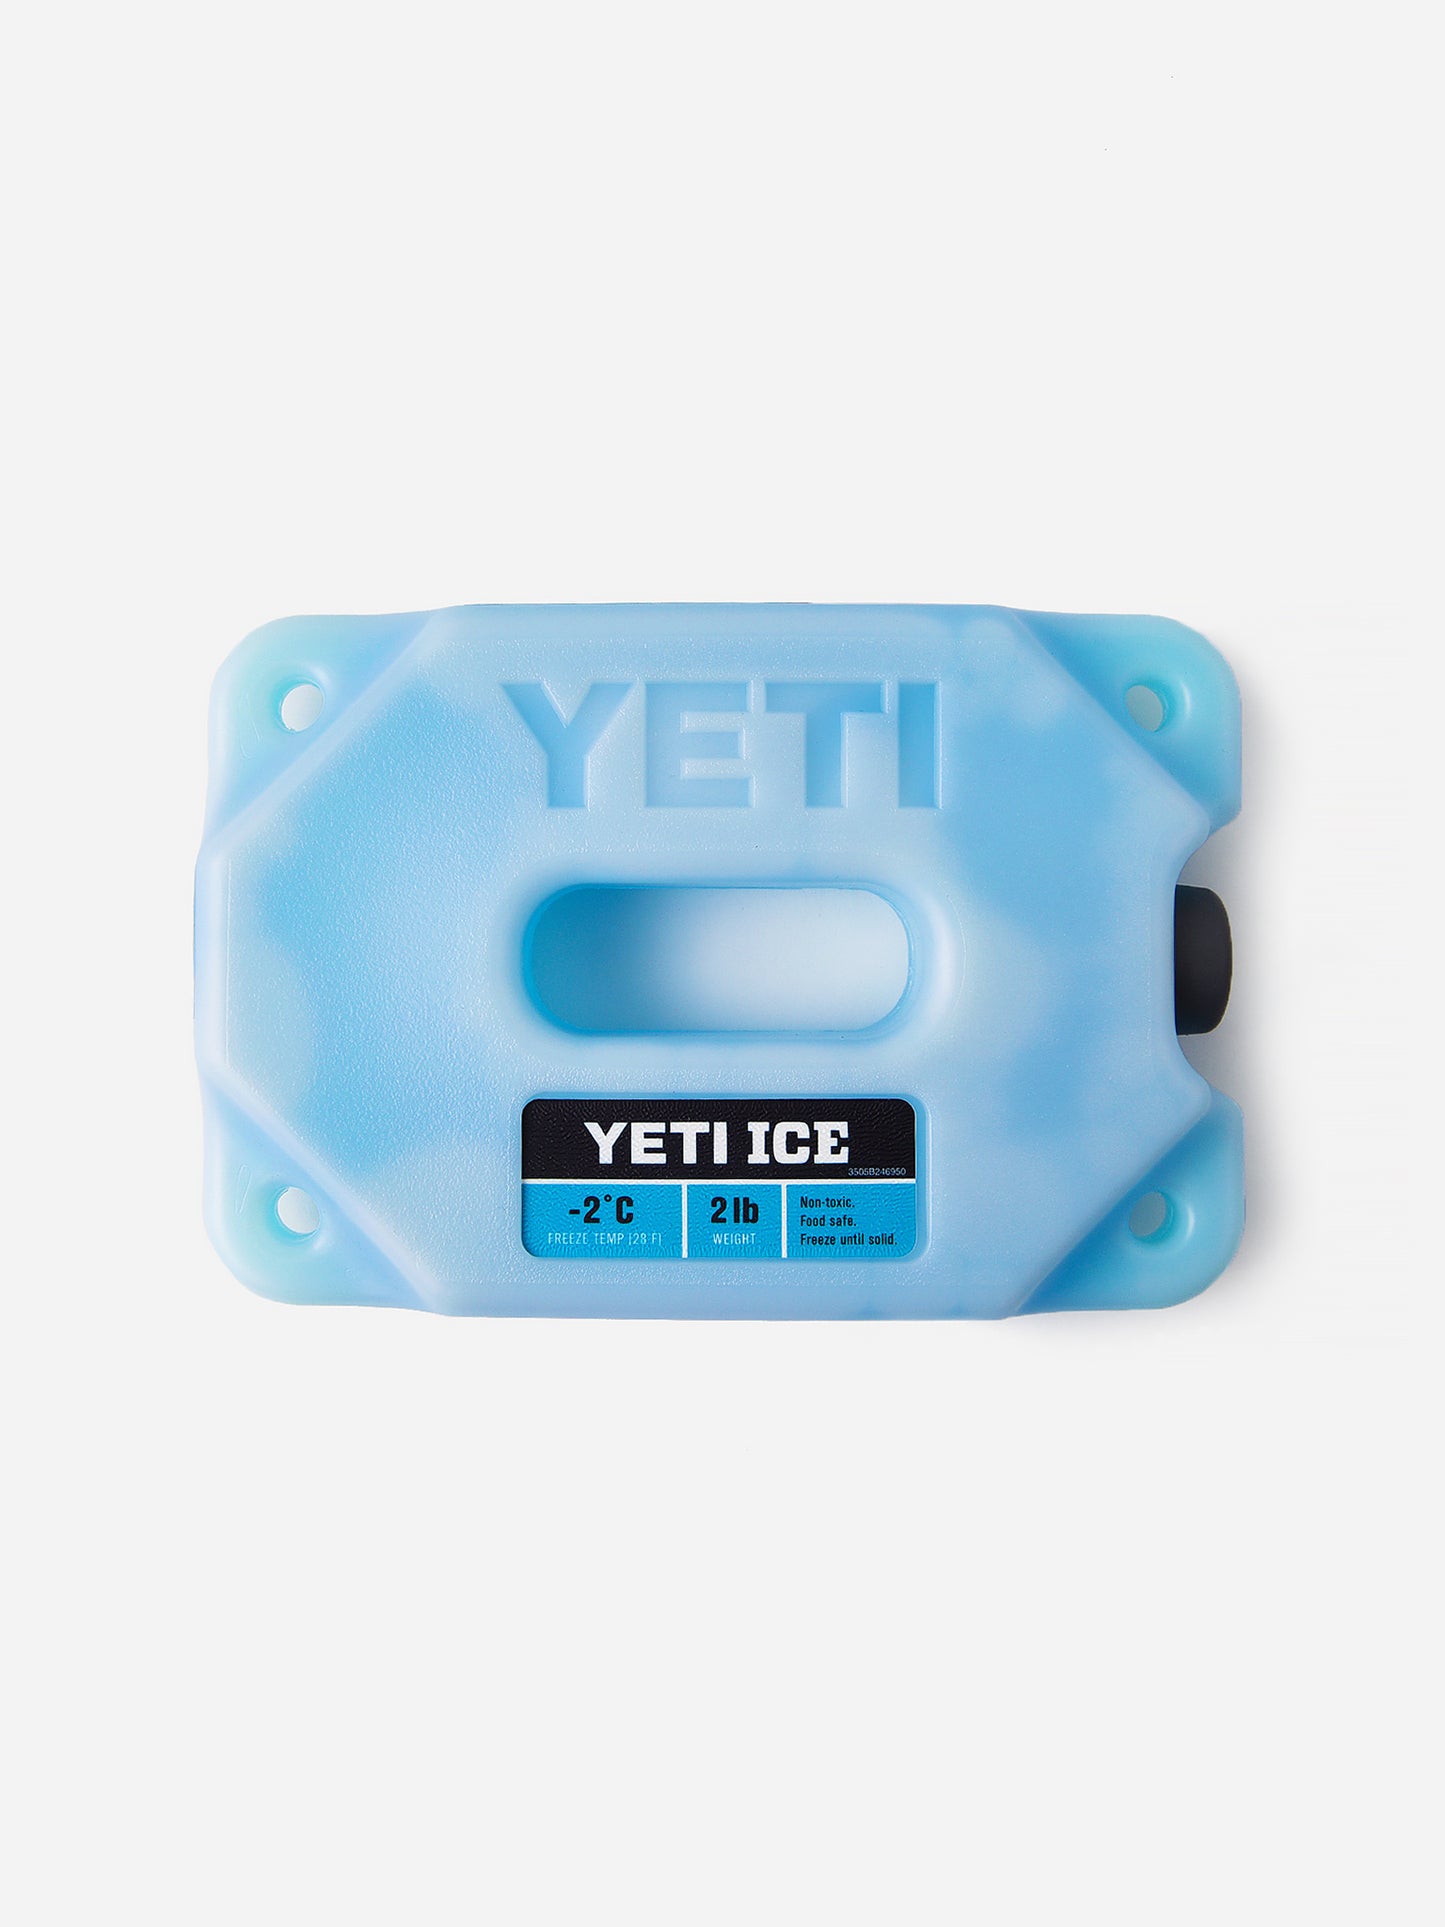 YETI Coolers Yeti Ice 2 lb.